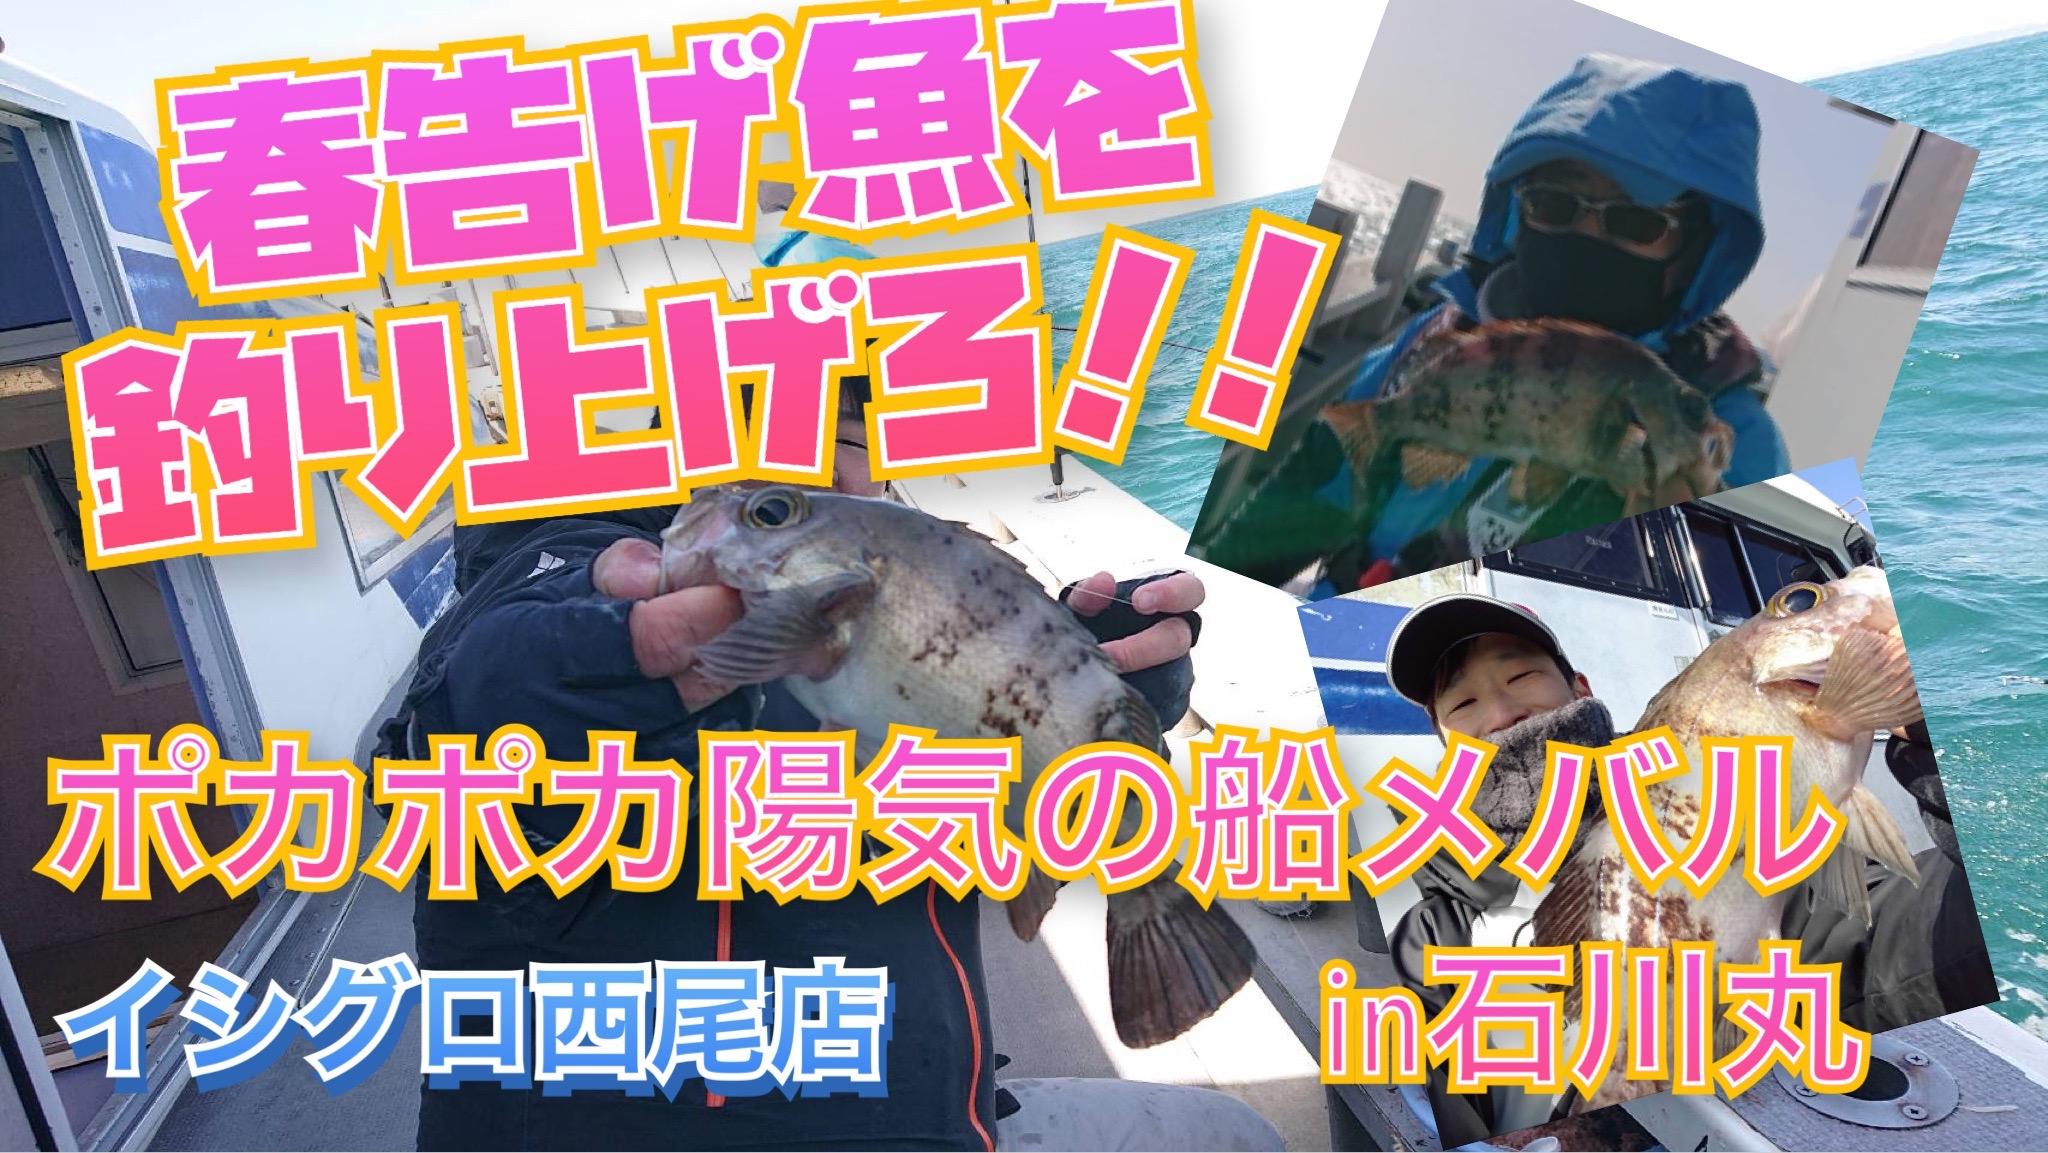 春告げ魚到来 船メバルで春らしい魚get 嬉しいゲストも In石川丸 イシグロ西尾店 釣具のイシグロ 釣り情報サイト